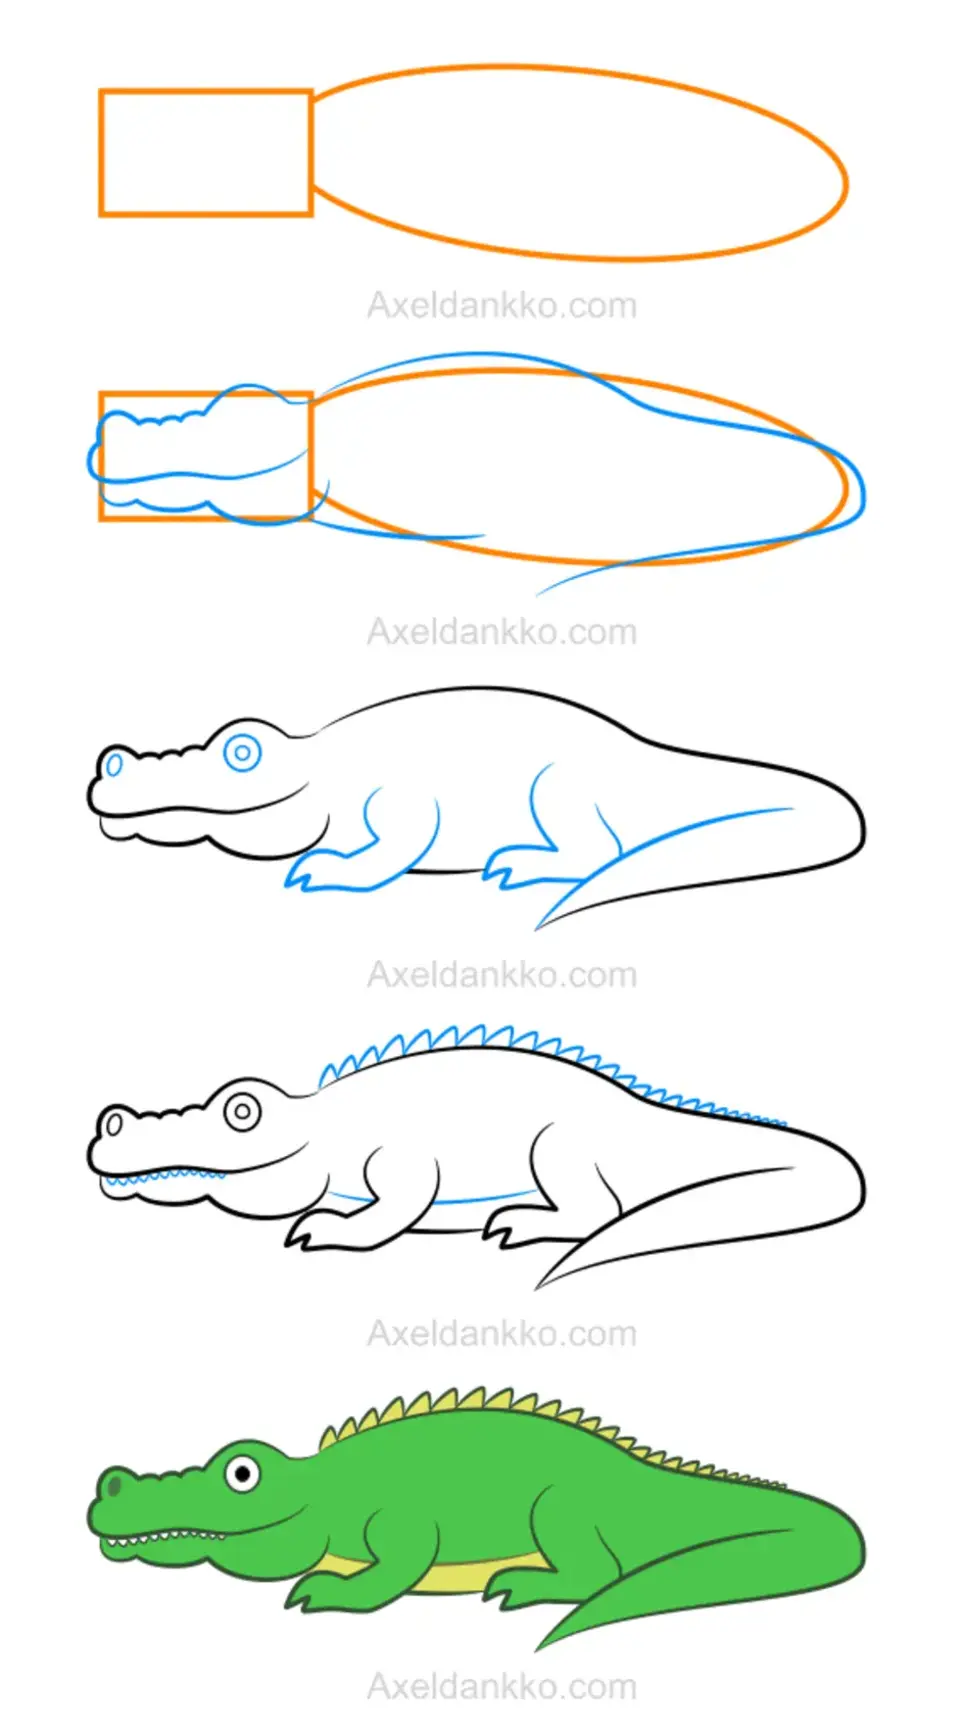 Крокодил карандашом для начинающих